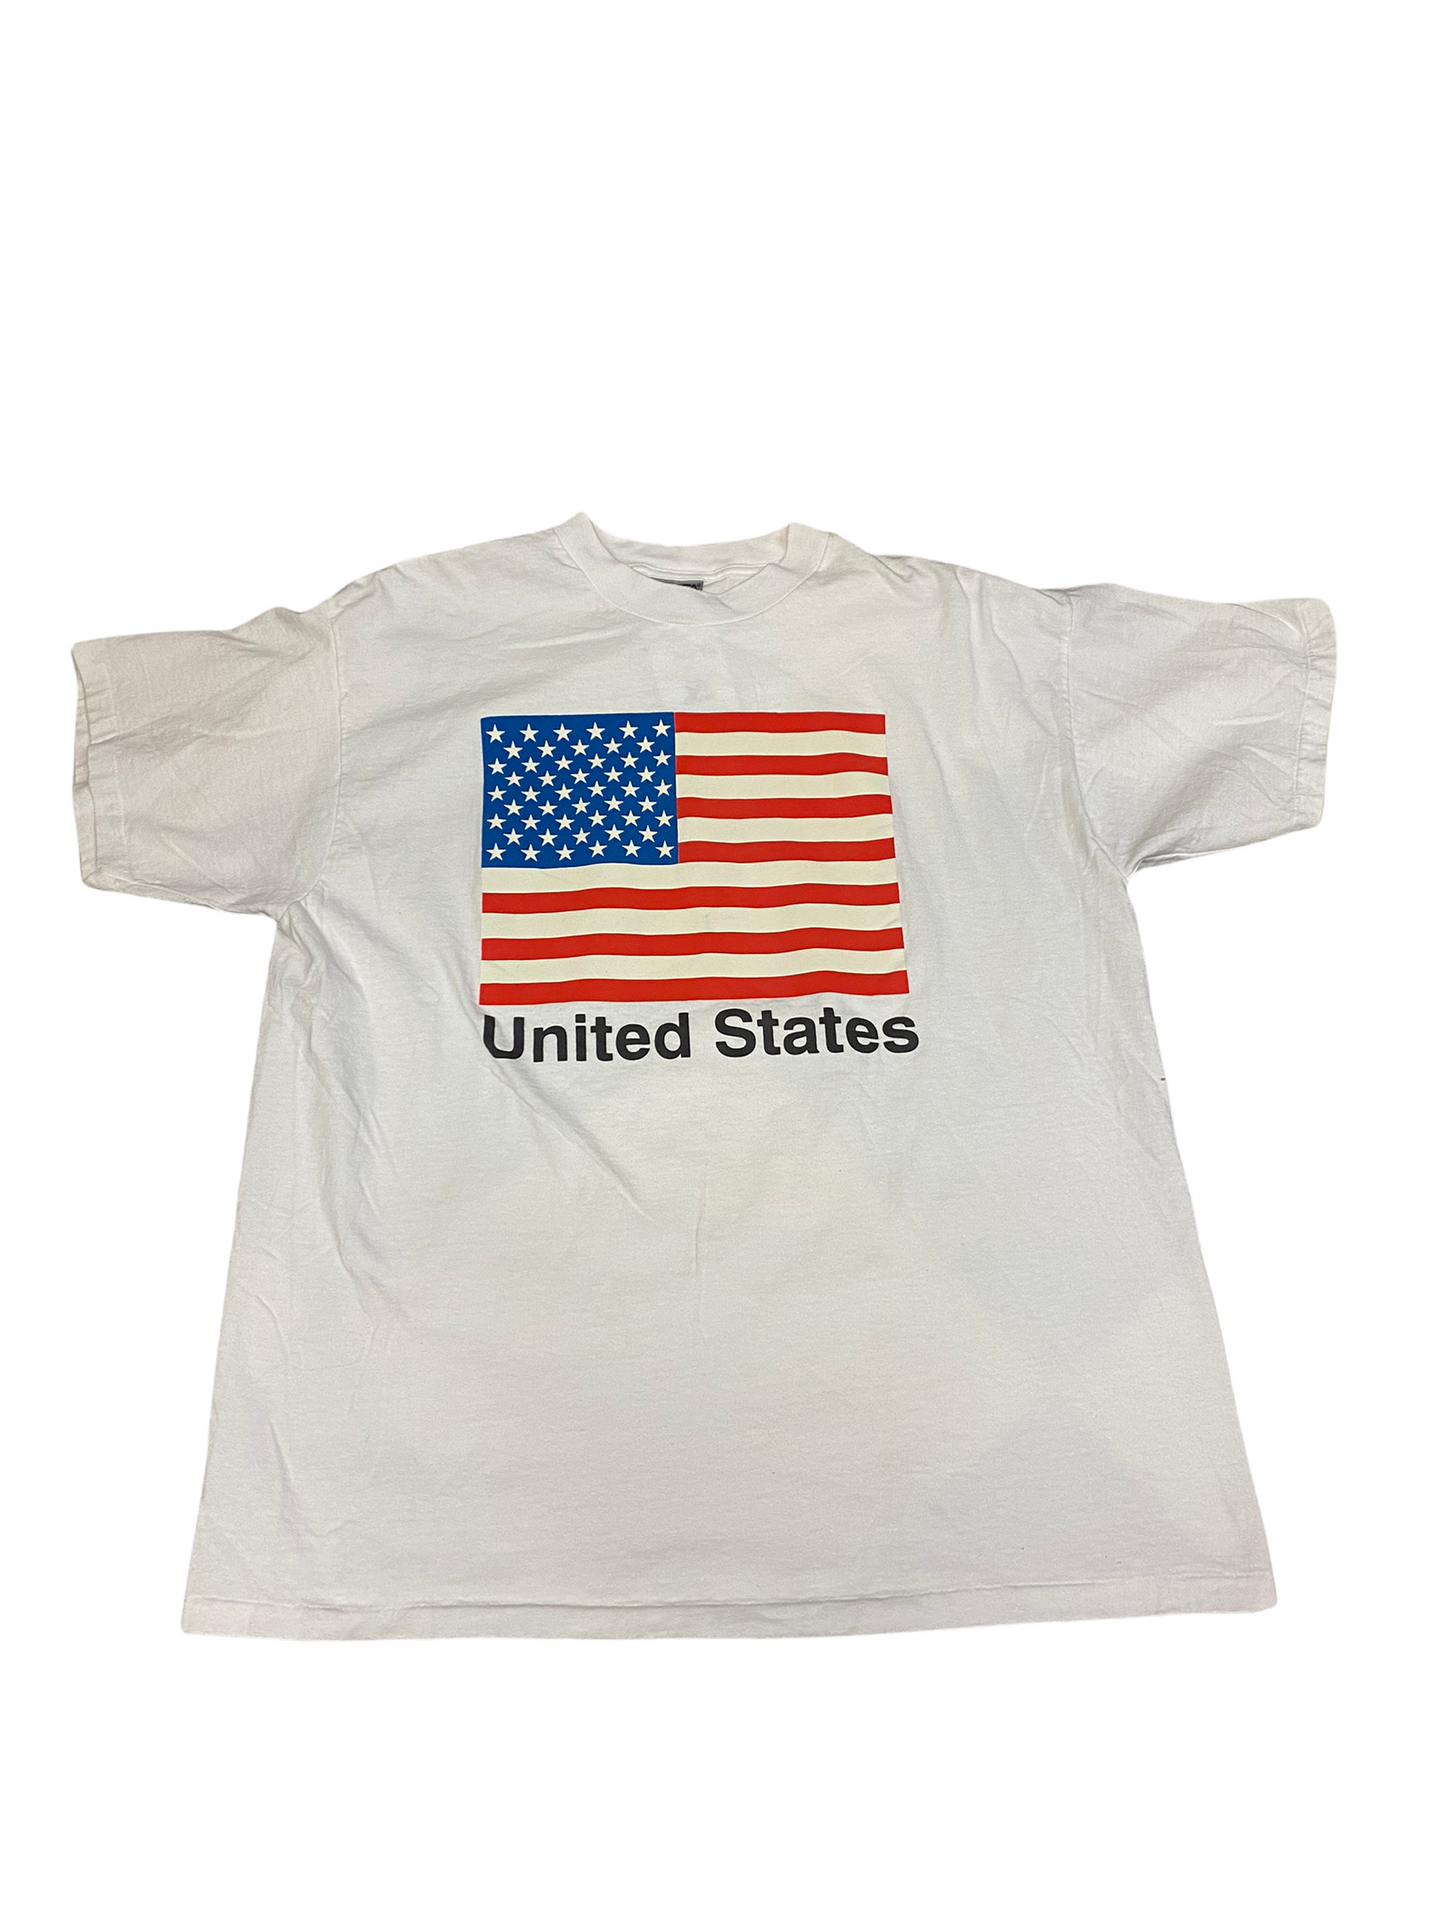 (XL) Vintage United States Tee